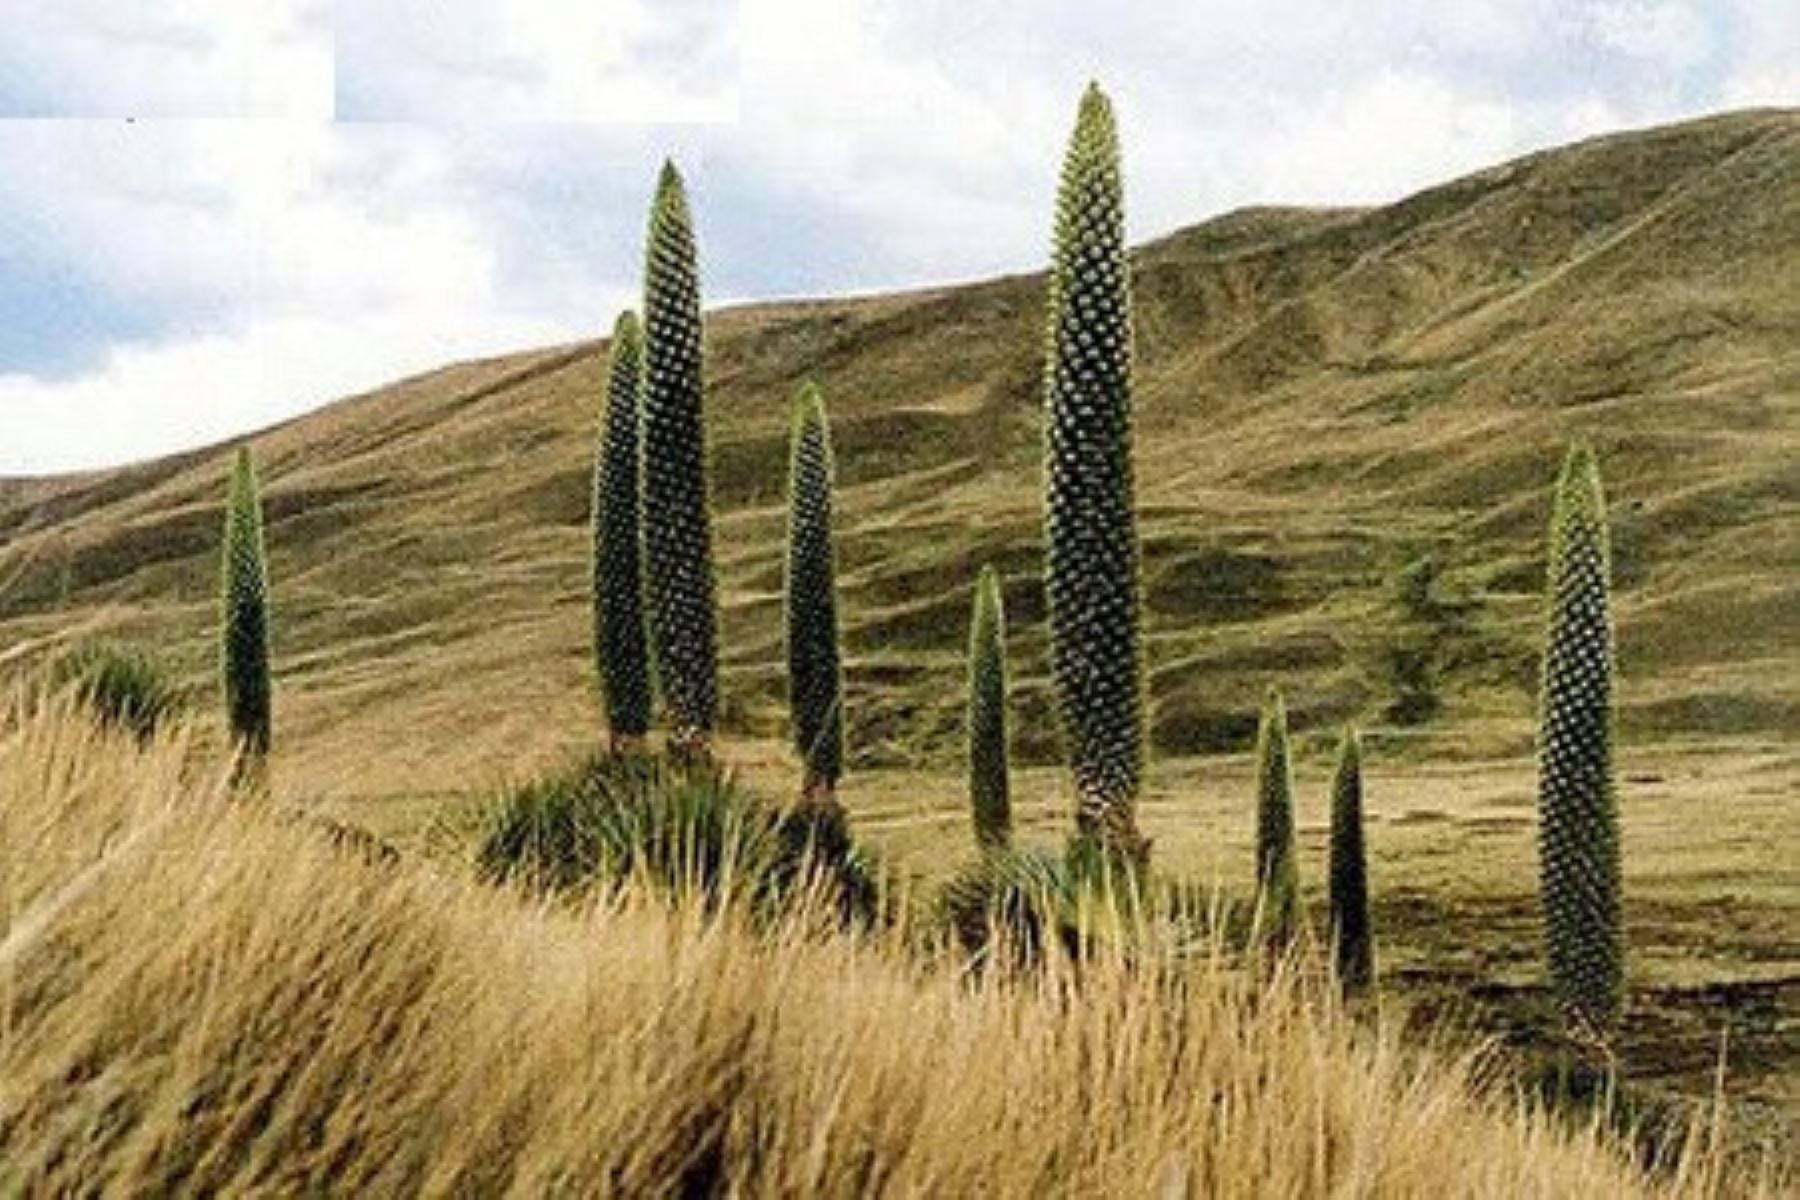 Tintacayoq, donde se encuentra el Bosque de Puya Raymondi, planta que llega a crecer más de 10 metros de altura y que florece cada 100 años.